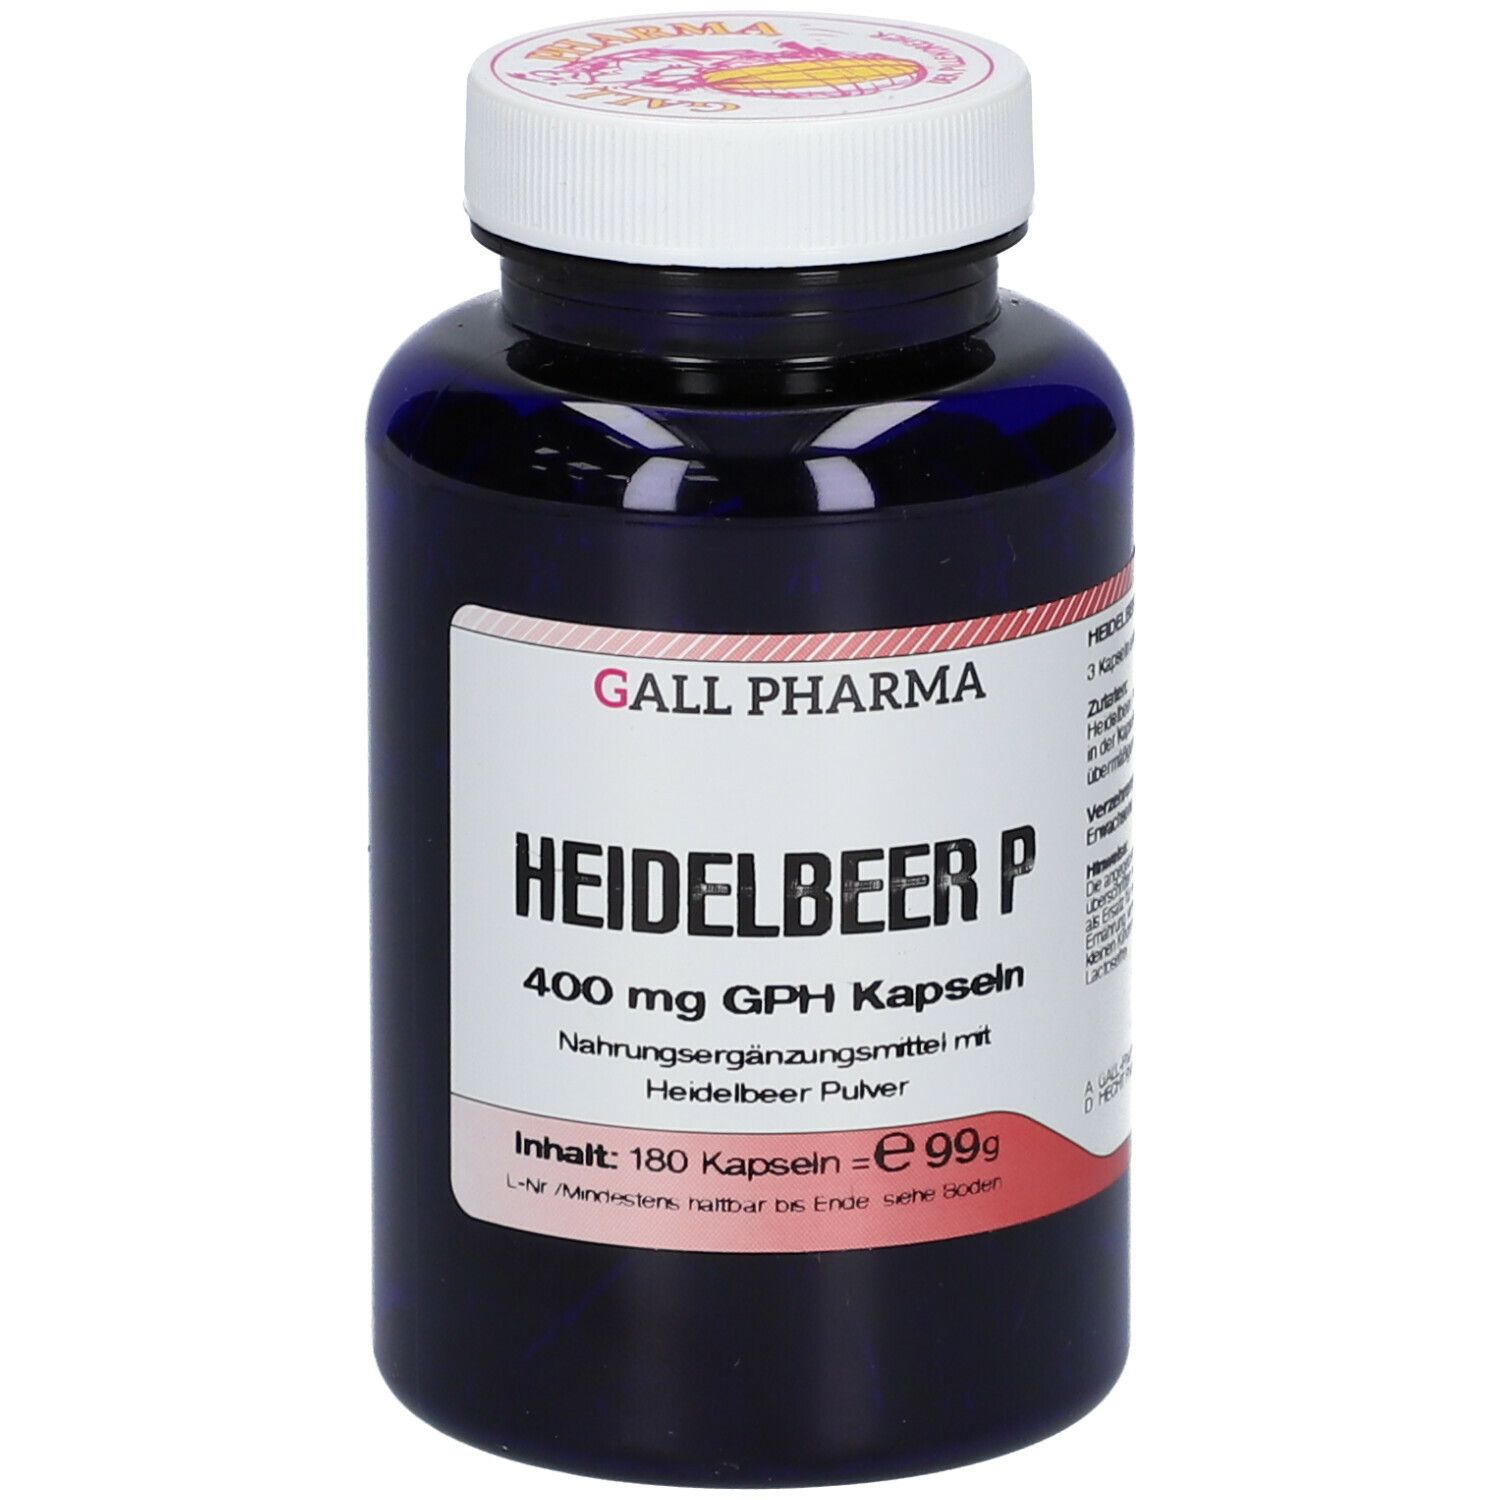 Gall Pharma Heidelbeer PE GPH Kapseln